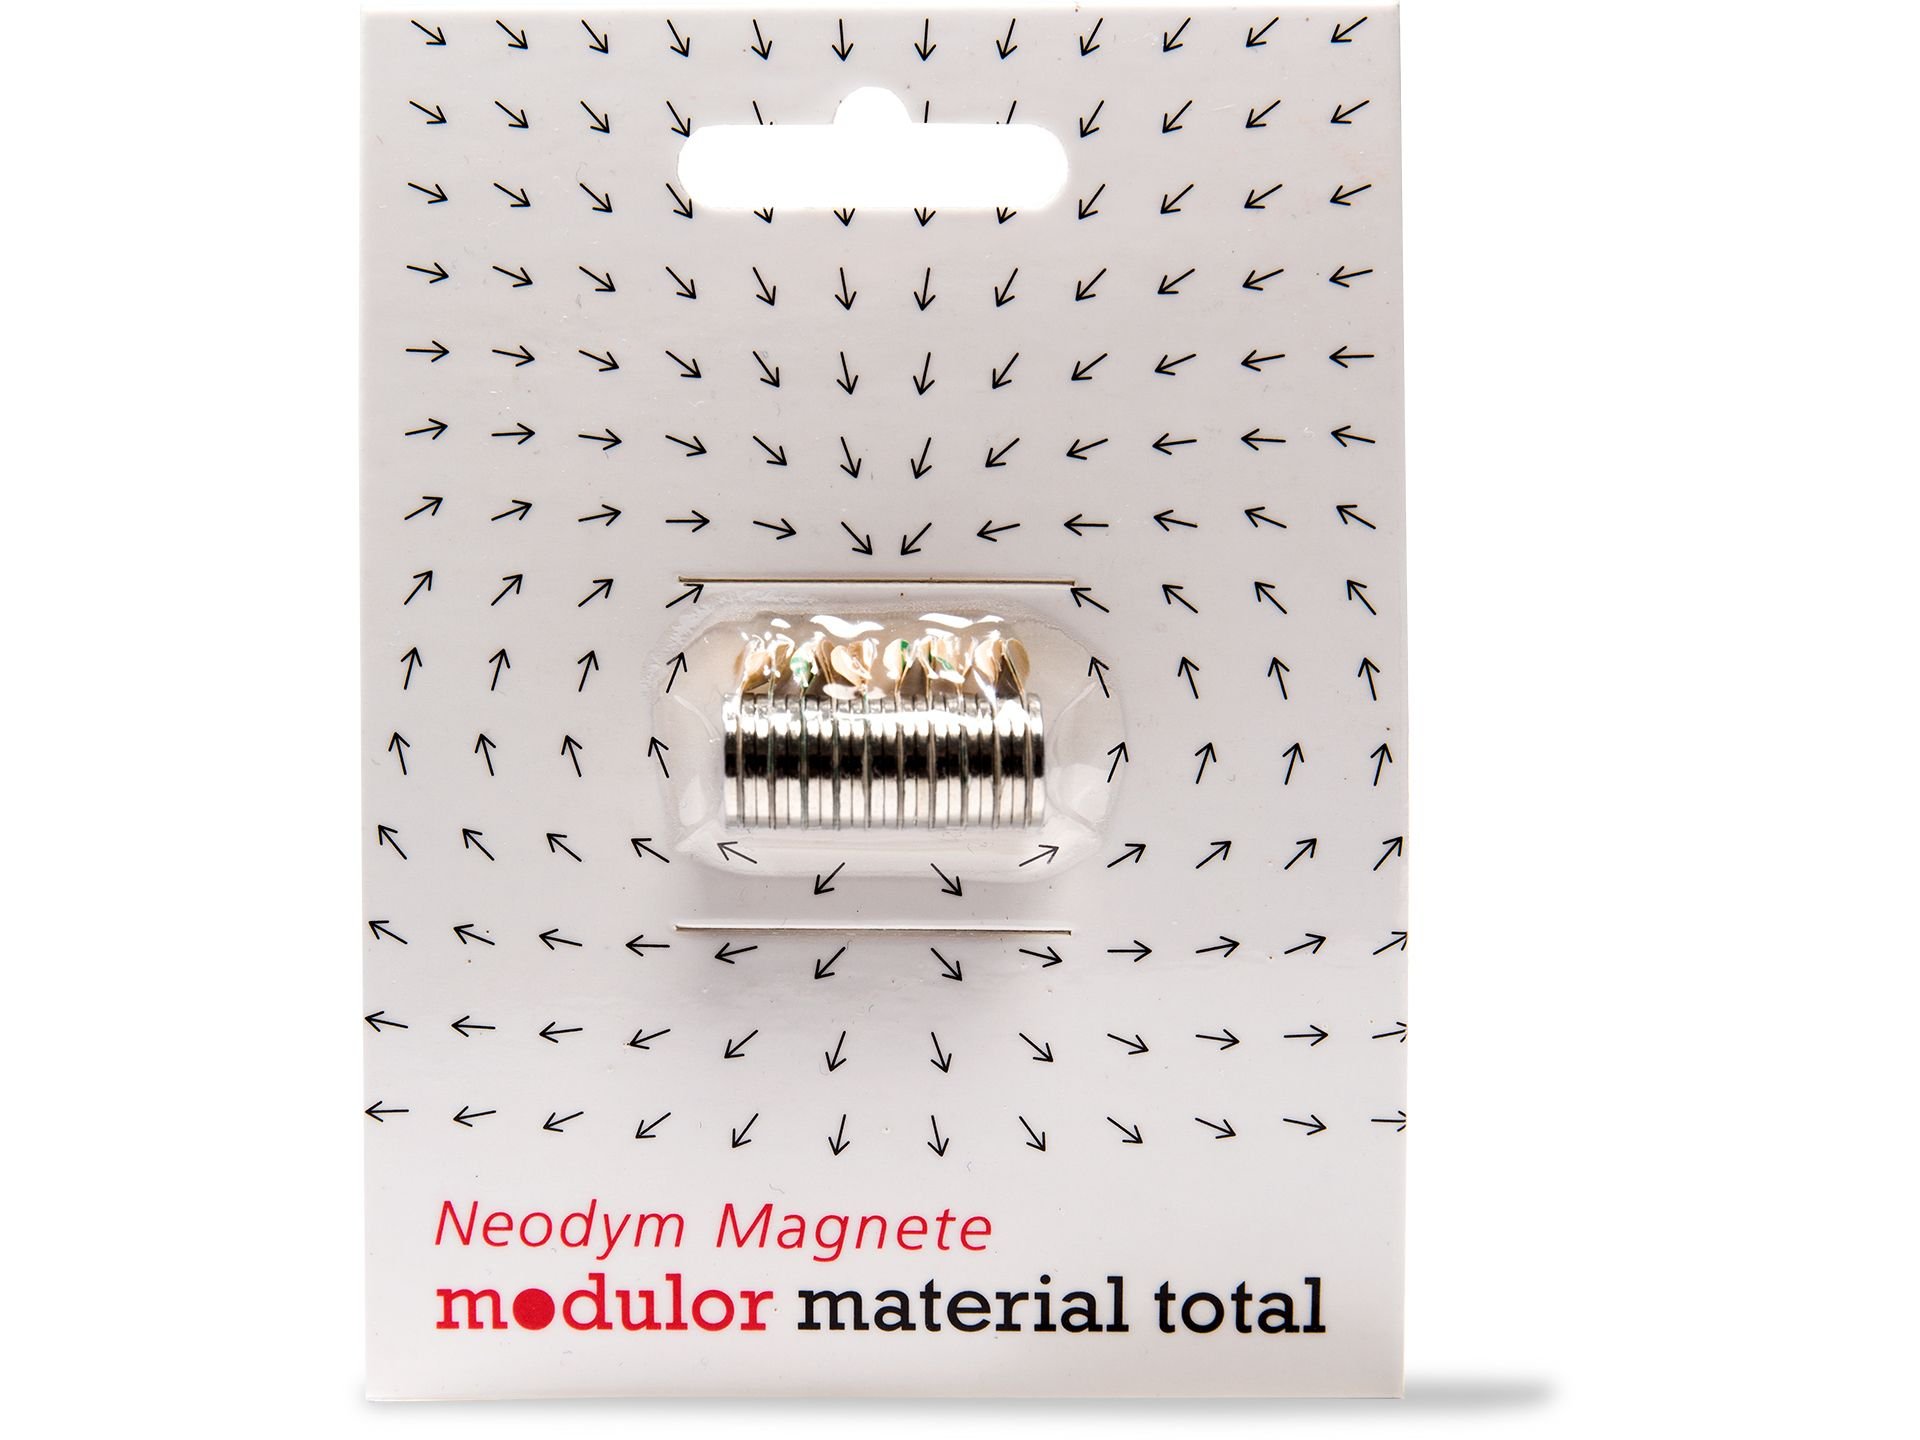 Neodym-Magnete auf Kunststoff kleben: So kleben Sie Neodym-Magnete